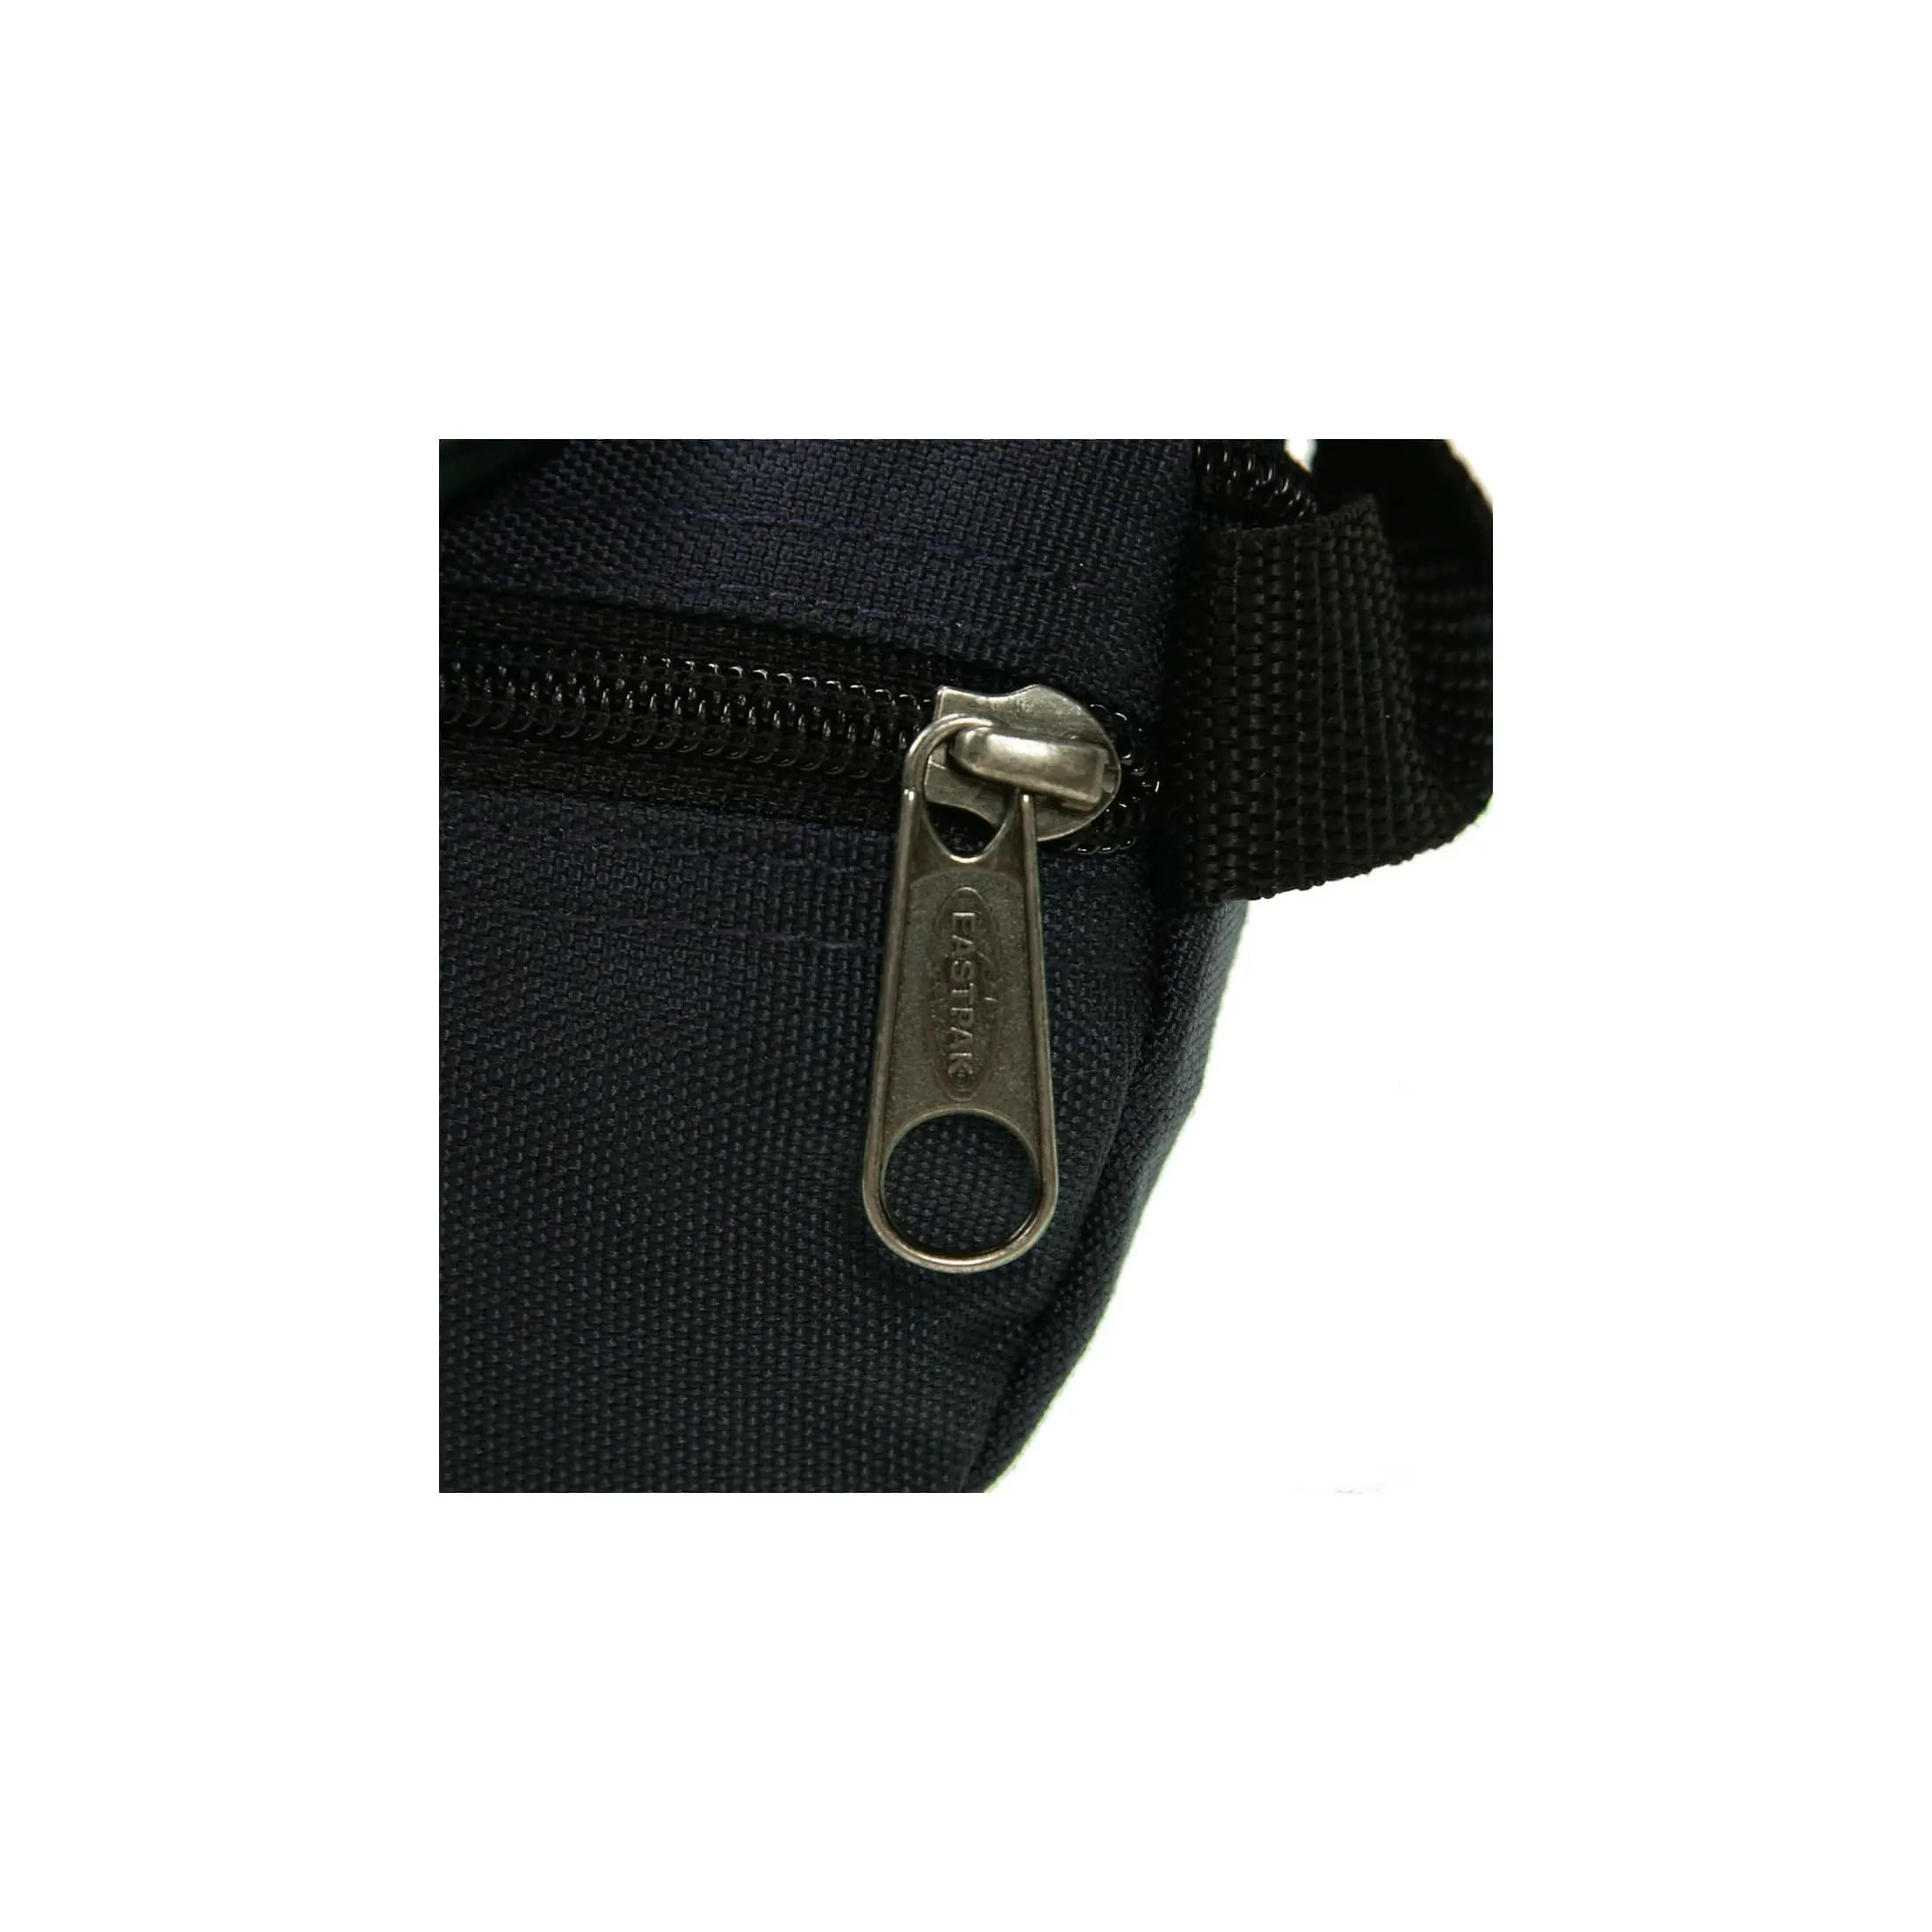 Eastpak Authentic Springer Belt Bag 23 cm - Ultra Marine